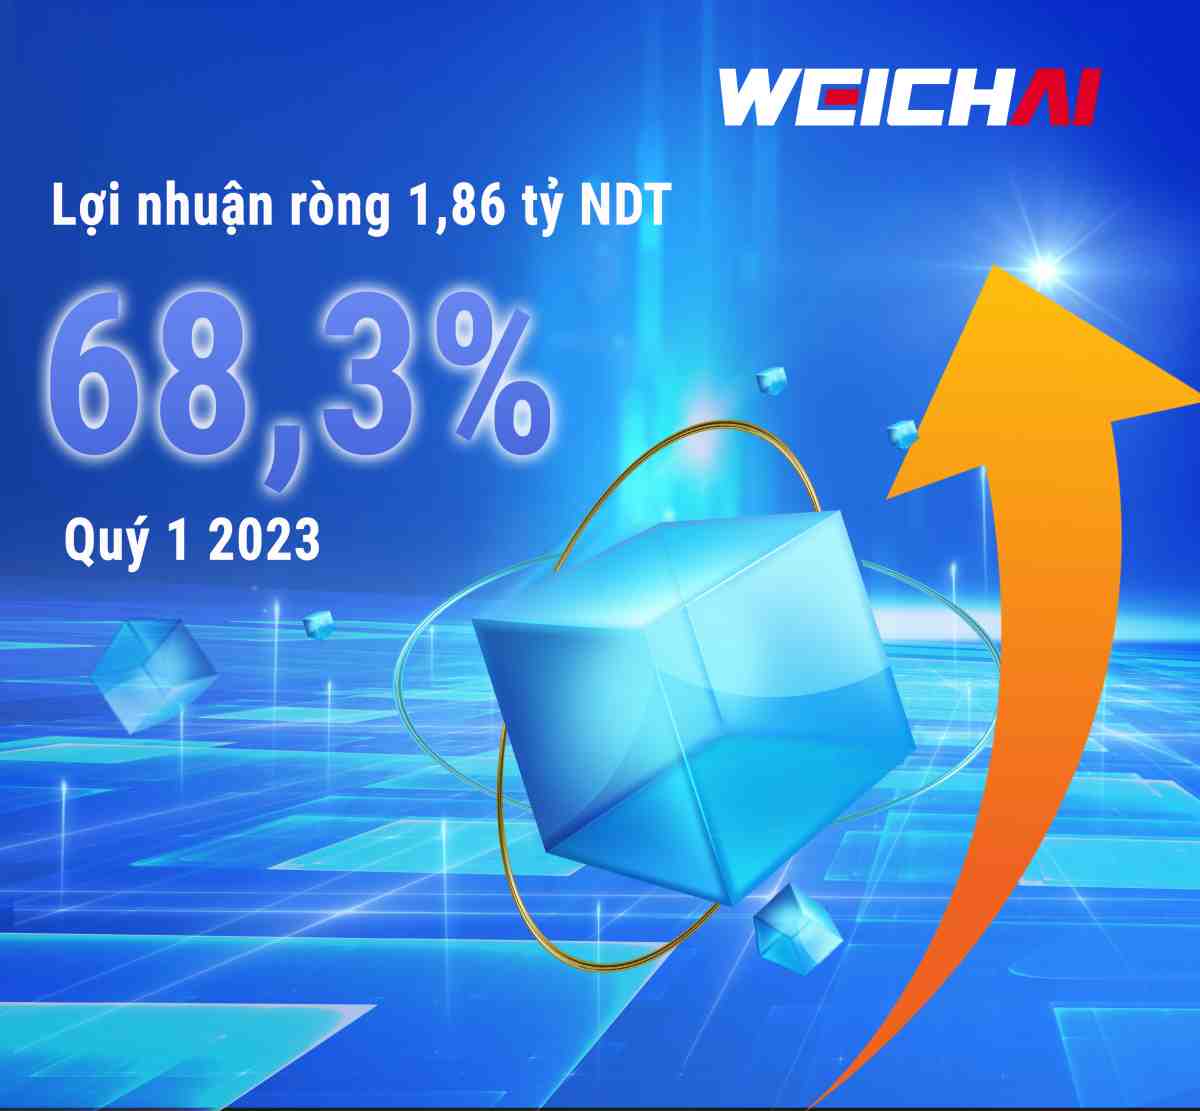 Weichai Power tăng trưởng ấn tượng trong Quý 1 năm 2023